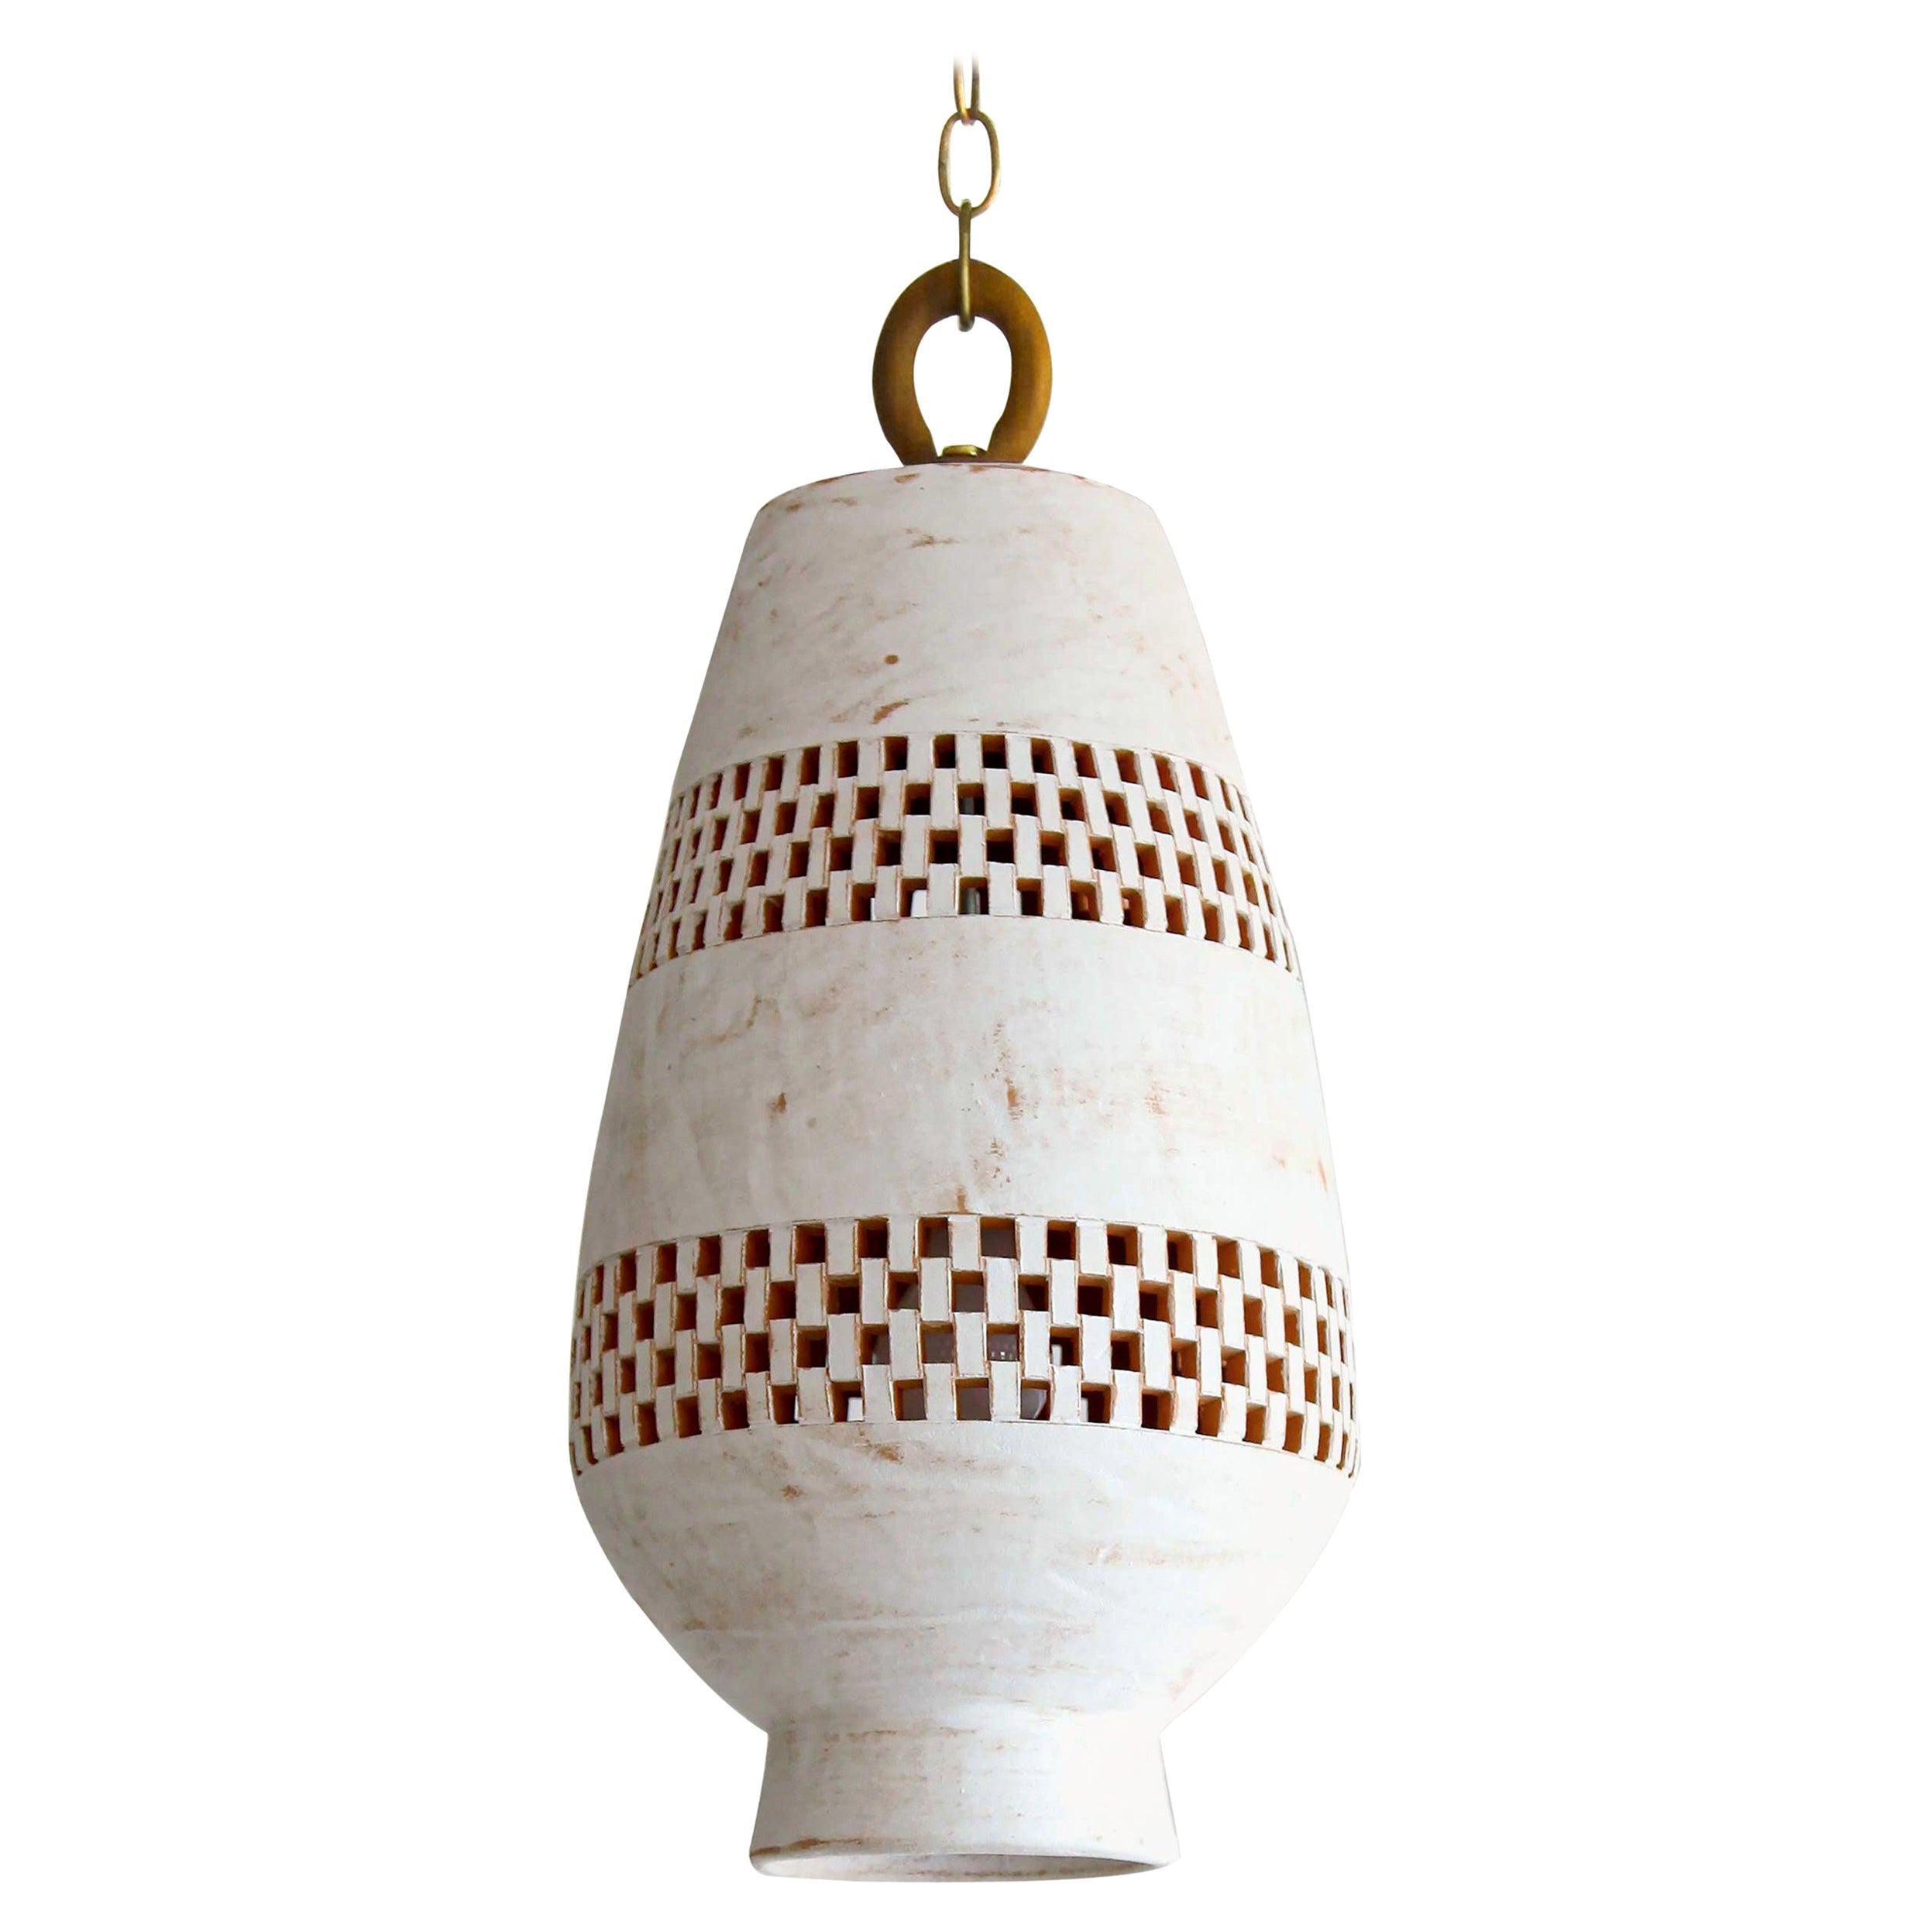 Hängeleuchte XL aus weißer Keramik, gealtertes Messing, Ajedrez Atzompa Kollektion